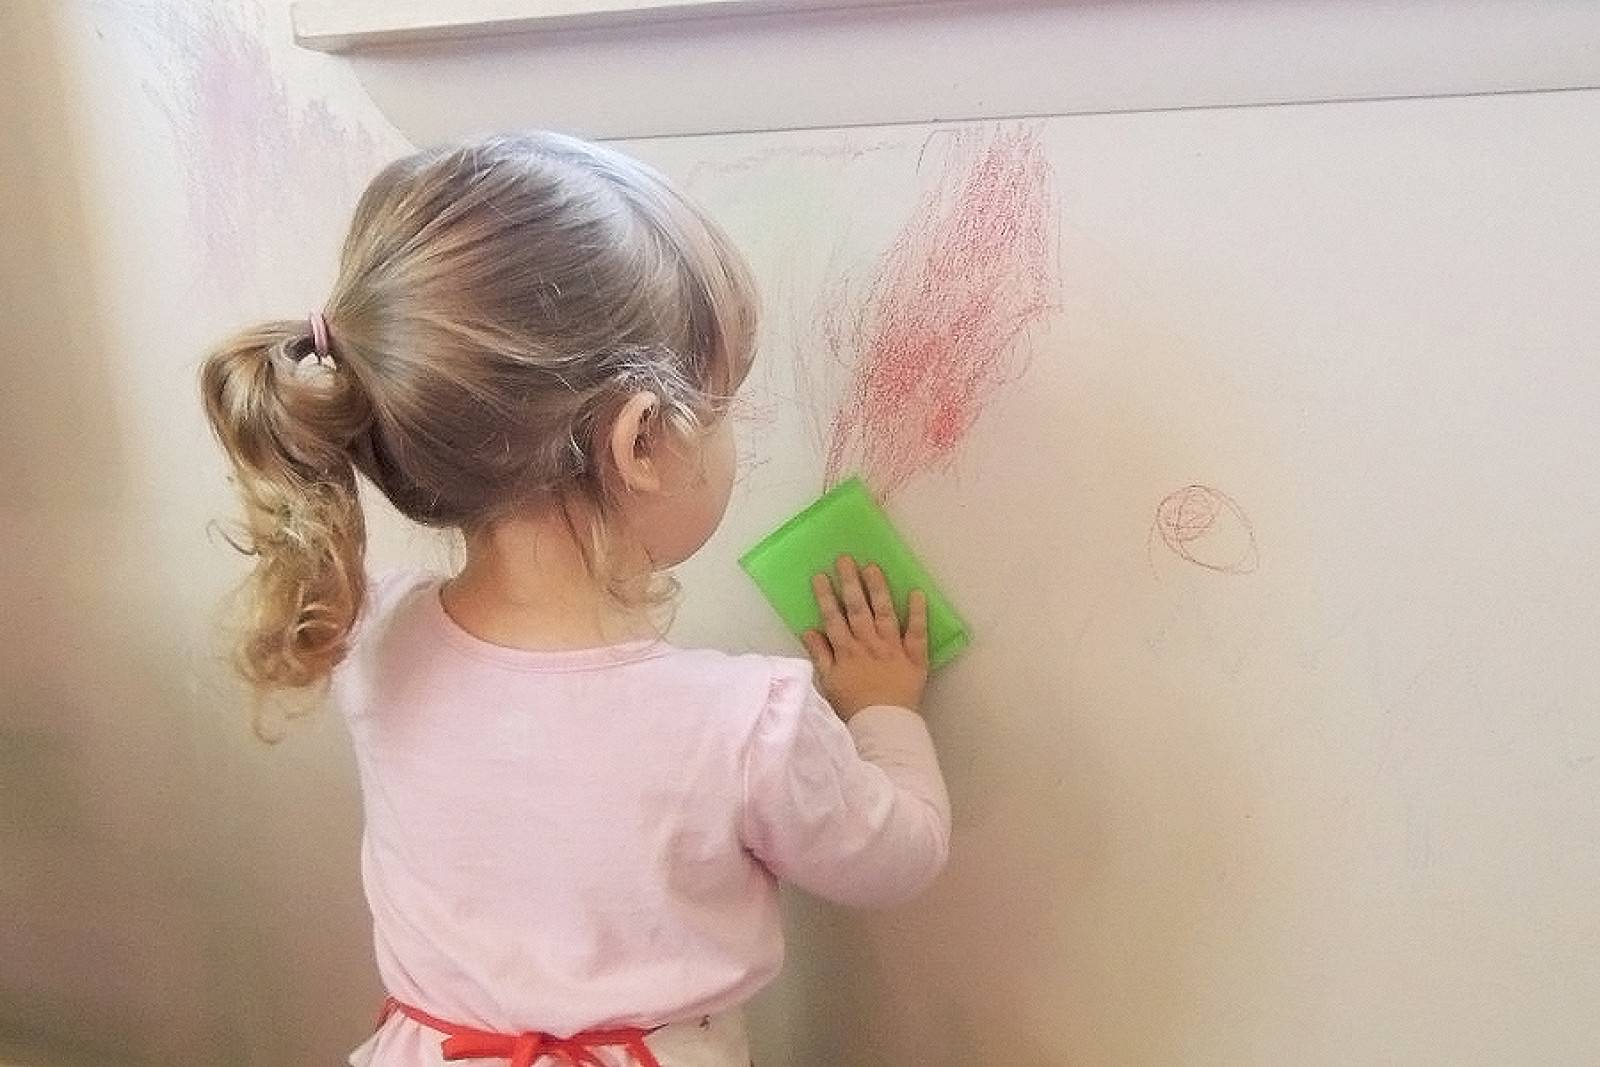 Ребенок изрисовал. Ребенок рисует на стене. Рисование на обоях с детьми. Ребенок рисует на обоях. Ребенок разрисовал стены.